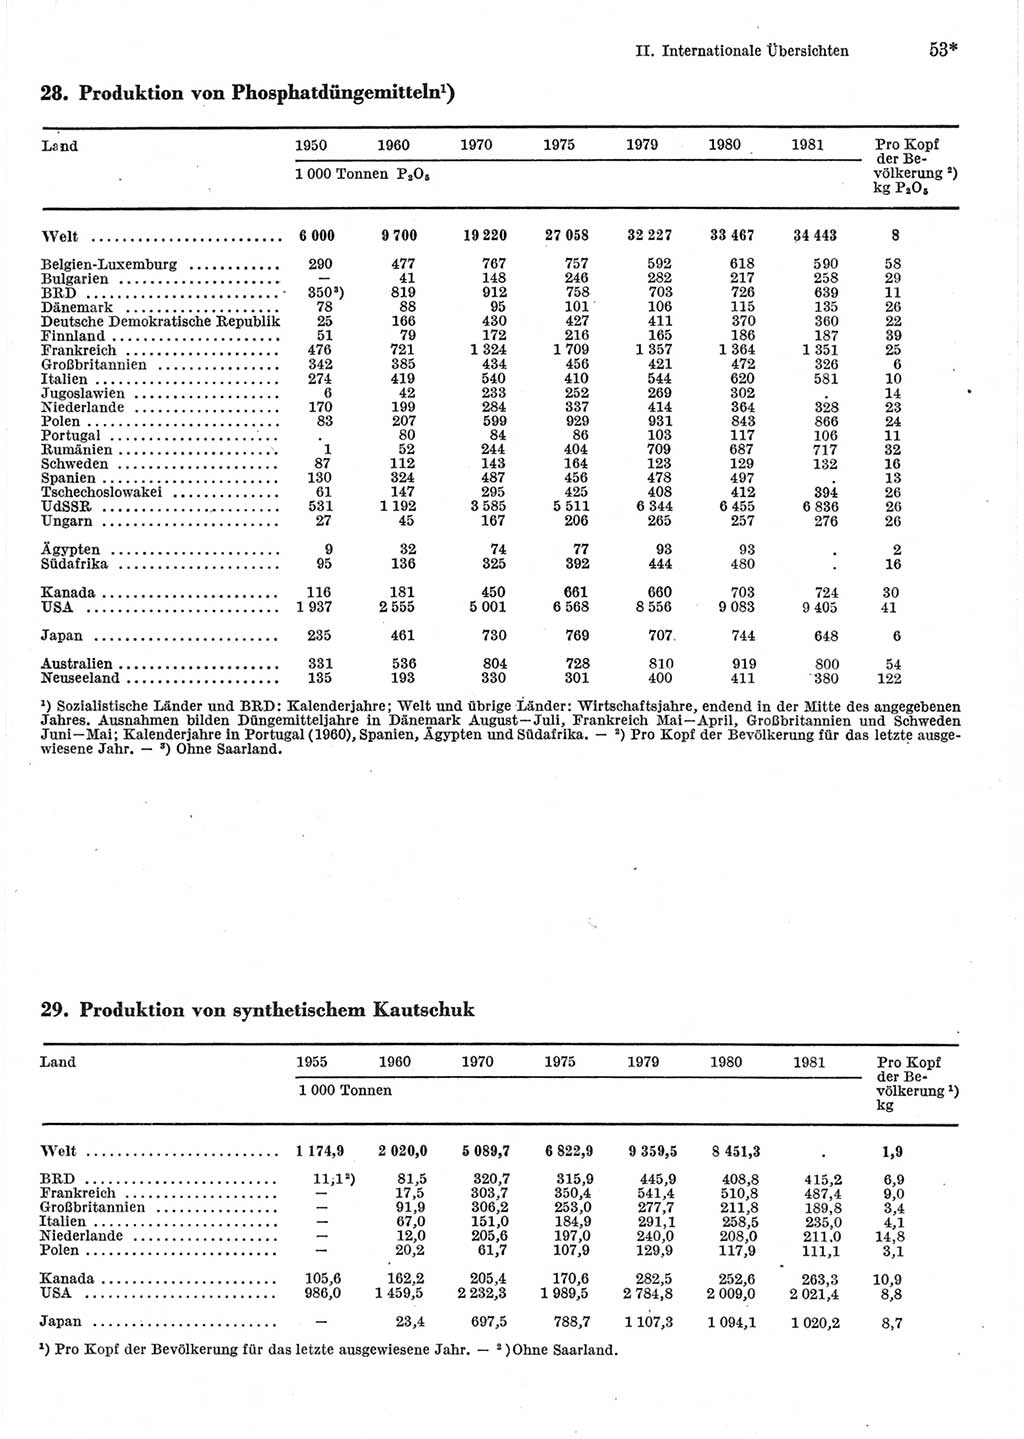 Statistisches Jahrbuch der Deutschen Demokratischen Republik (DDR) 1983, Seite 53 (Stat. Jb. DDR 1983, S. 53)